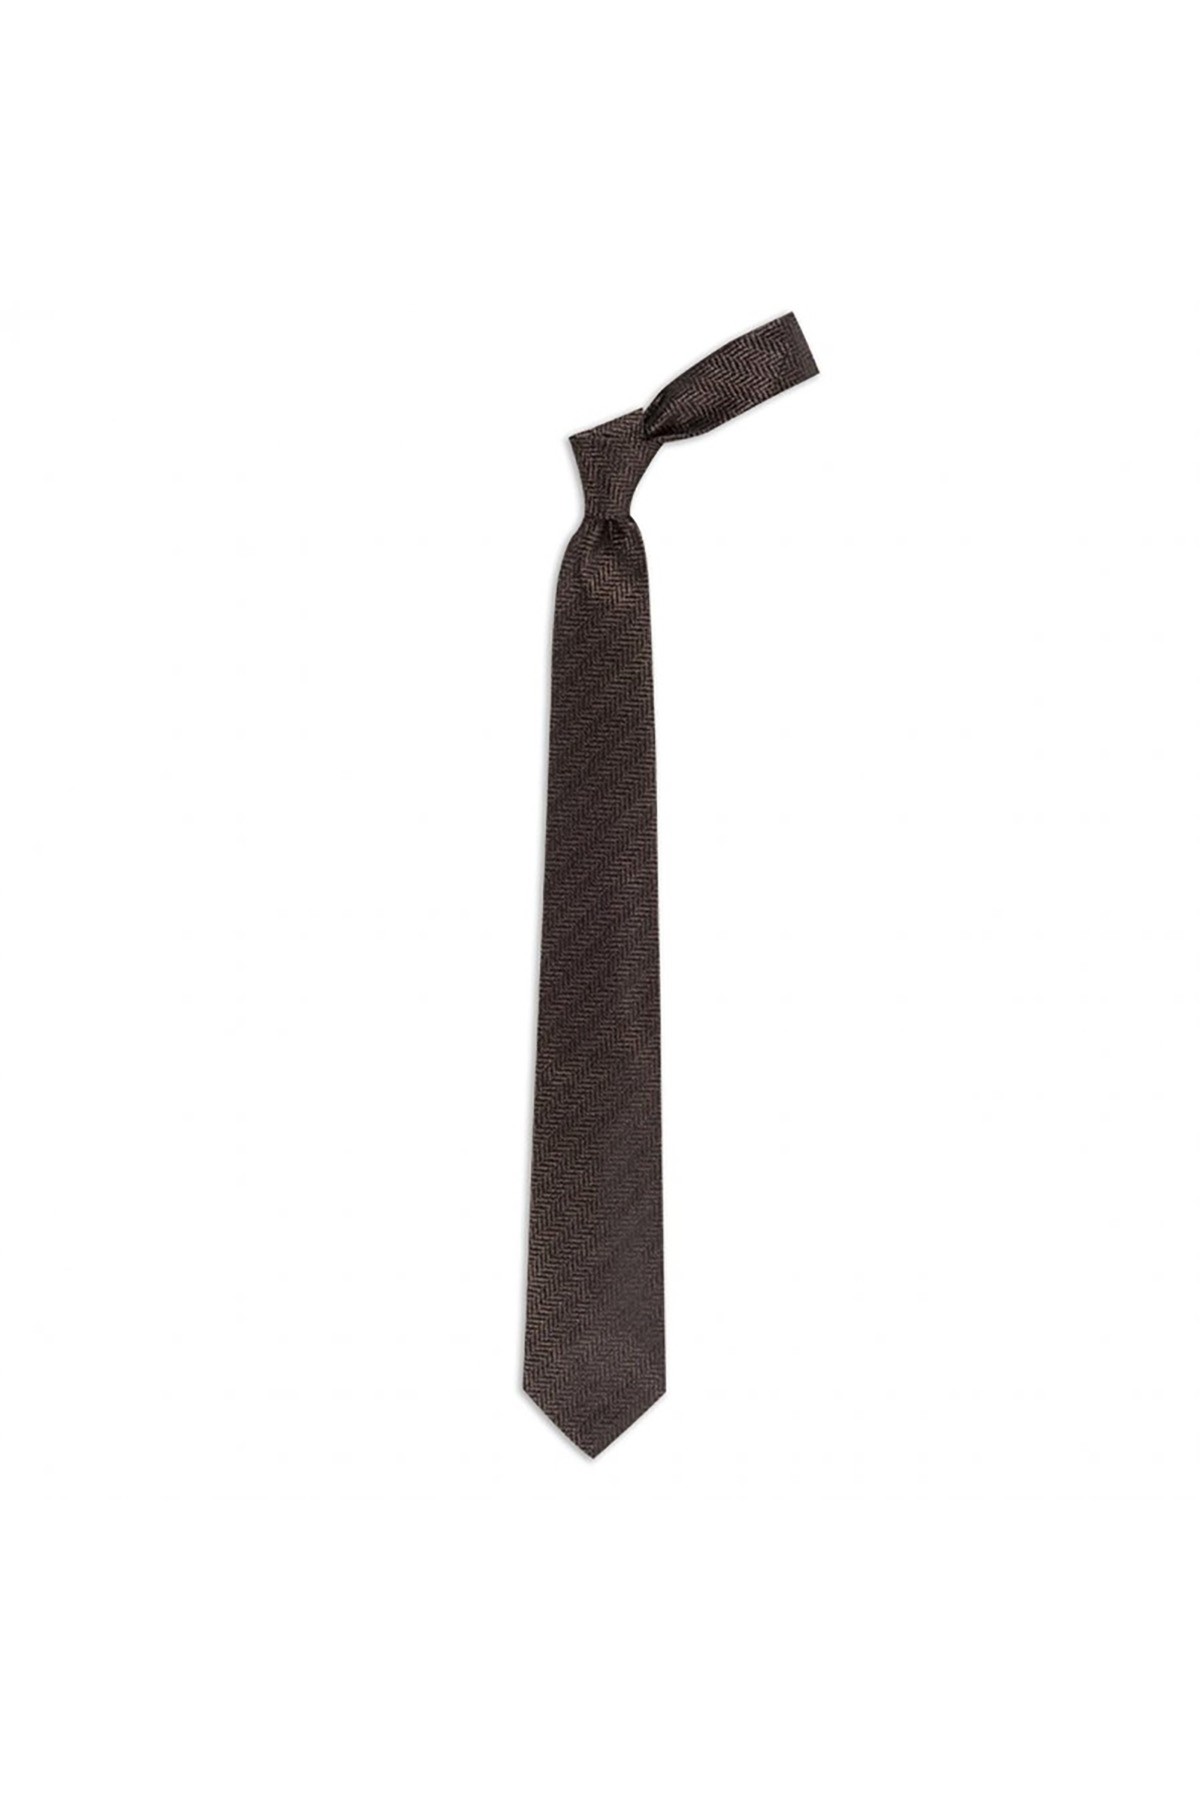 Balıksırtı desenli 8 cm genişliğinde yün ipek karışımlı kravat - Kahverengi